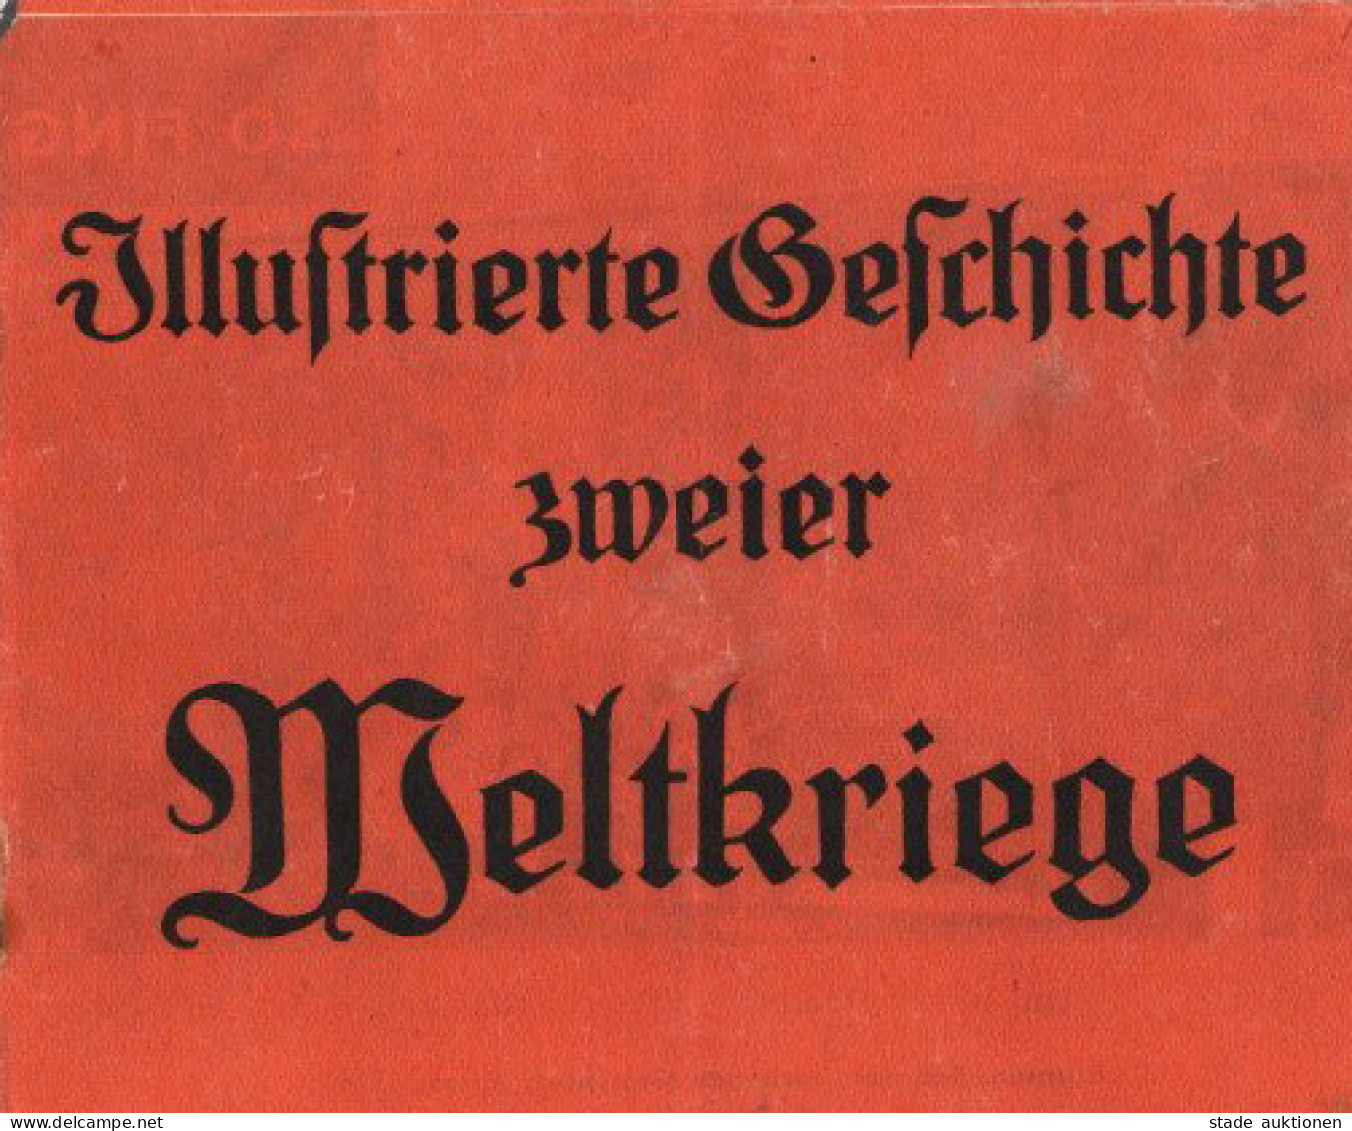 Propaganda WK II Heftchen Illustrierte Geschichte Zweier Weltkriege, 38 S. II - War 1939-45